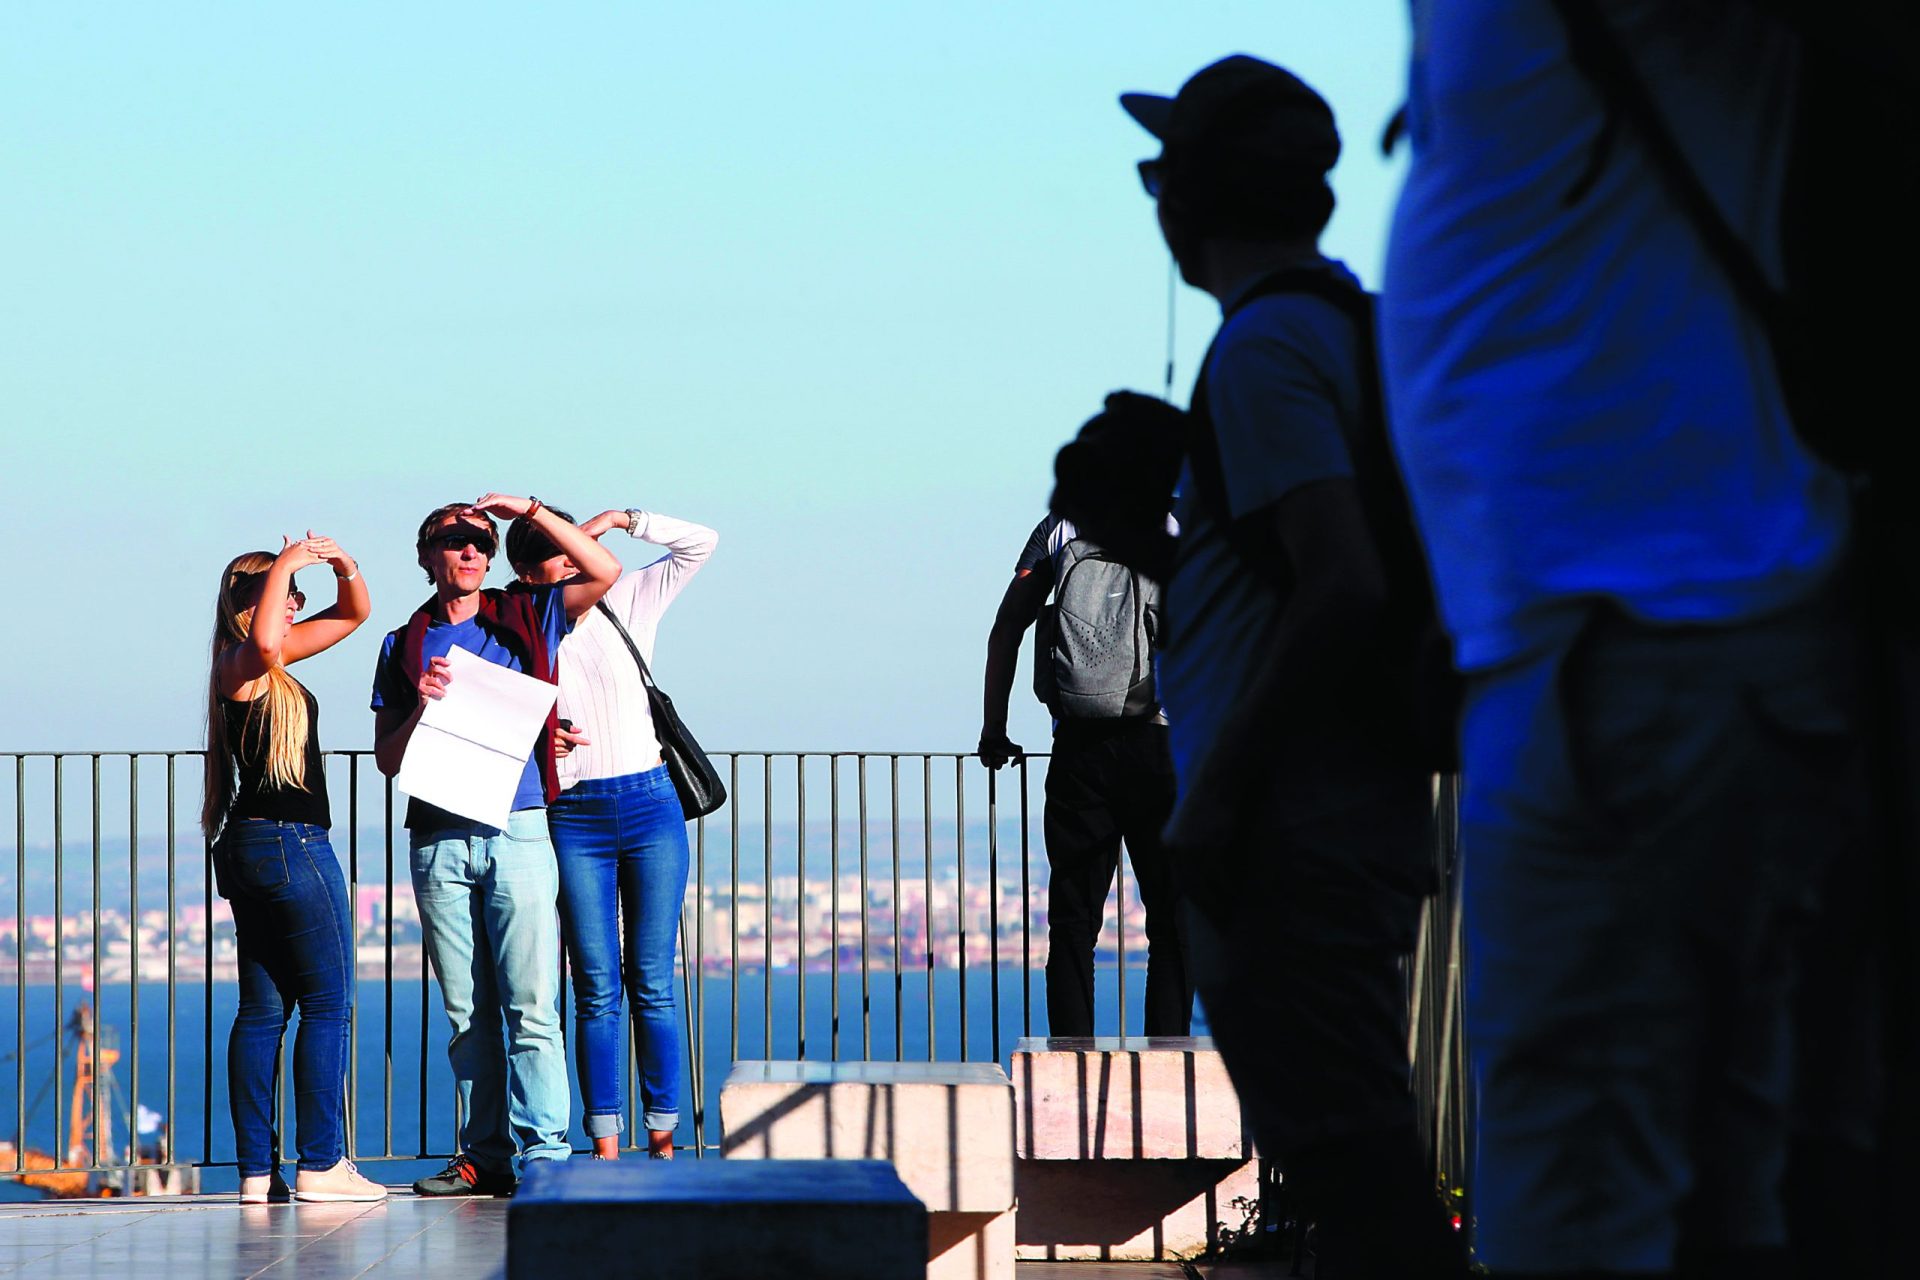 Lisboa e Porto somaram 14,3 milhões em taxas turísticas em 2019